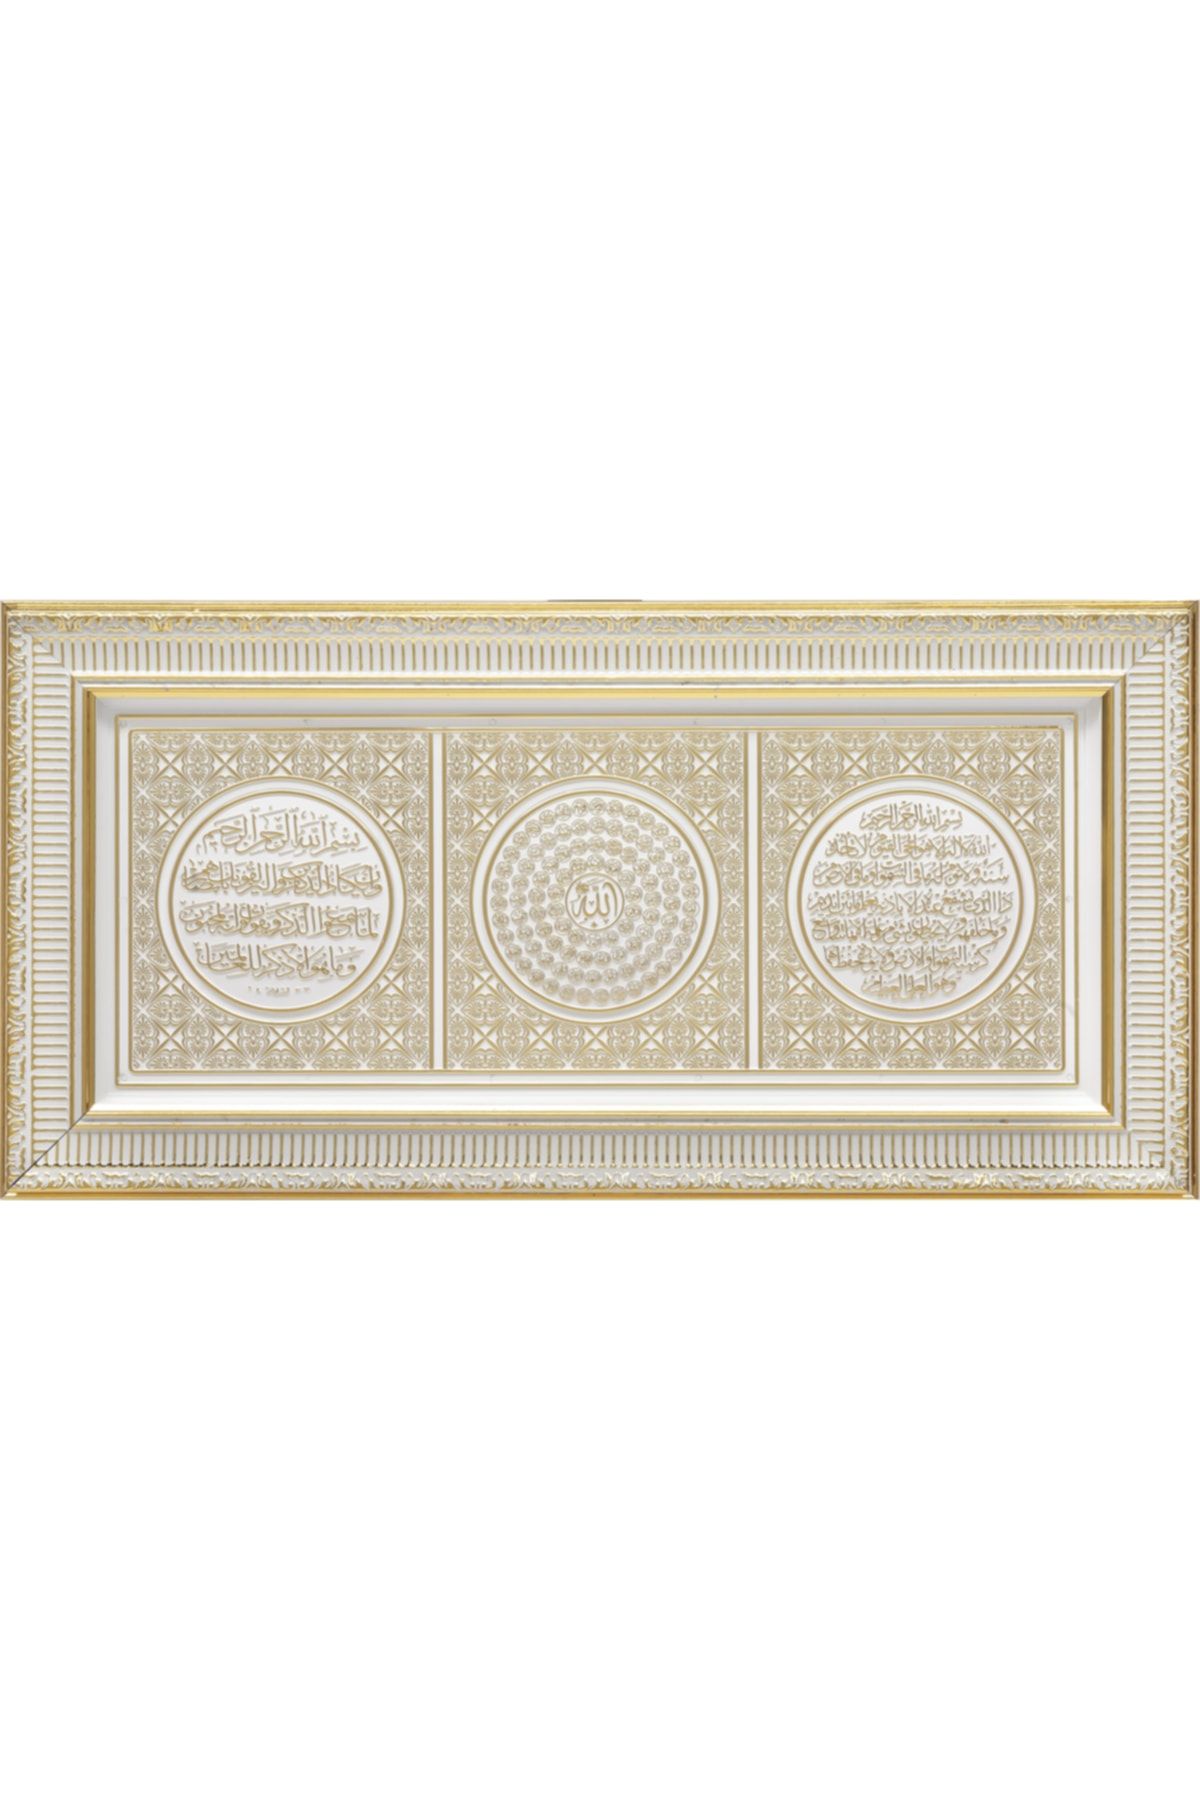 GÜNEŞ HEDİYELİK Ayet-el Kürsi Esma Nazar Duası Çerçeve Sarı Tablo 30x60cm